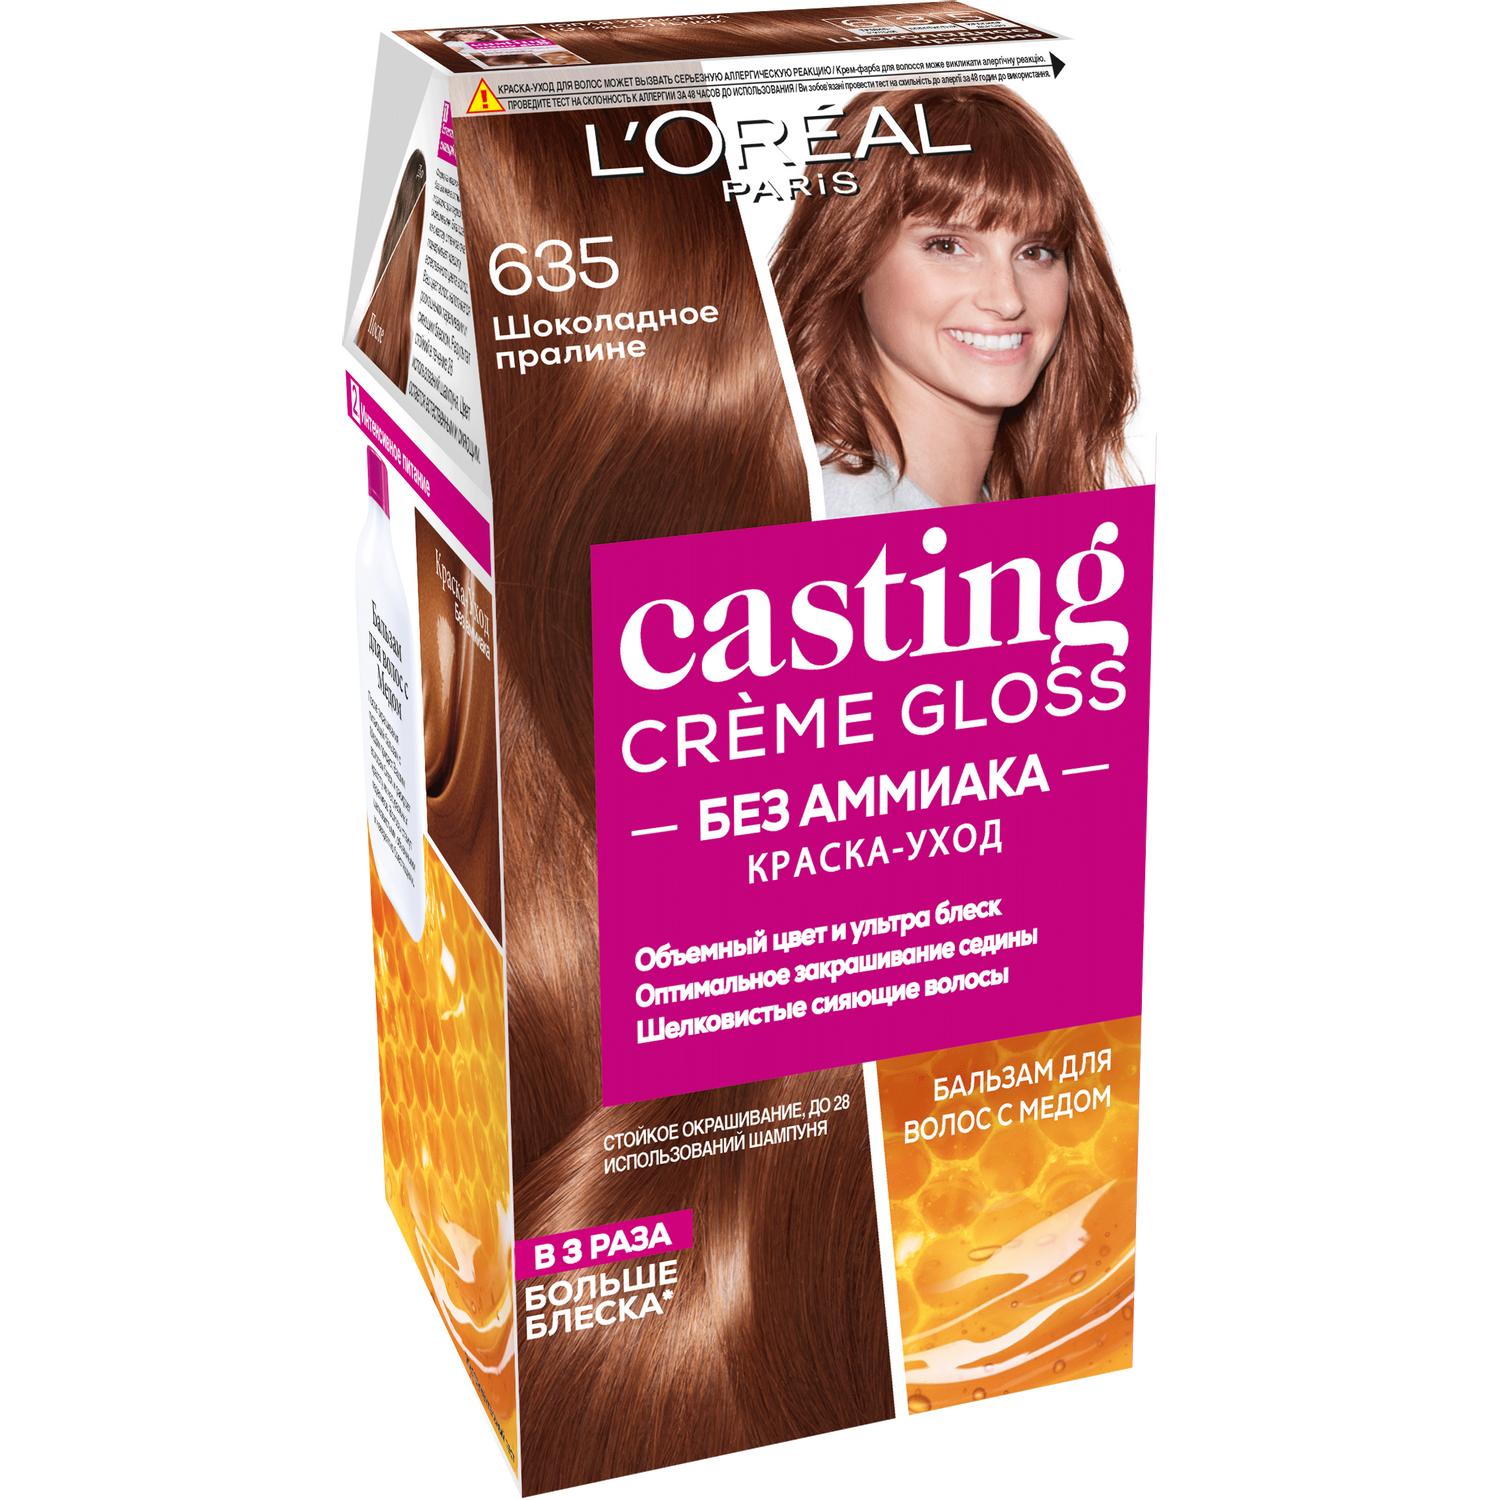 Краска для волос L'Oreal Paris Casting Creme Gloss 635 Шоколадное пралине краска для волос l oreal paris casting creme gloss 302 ледяной фраппучино